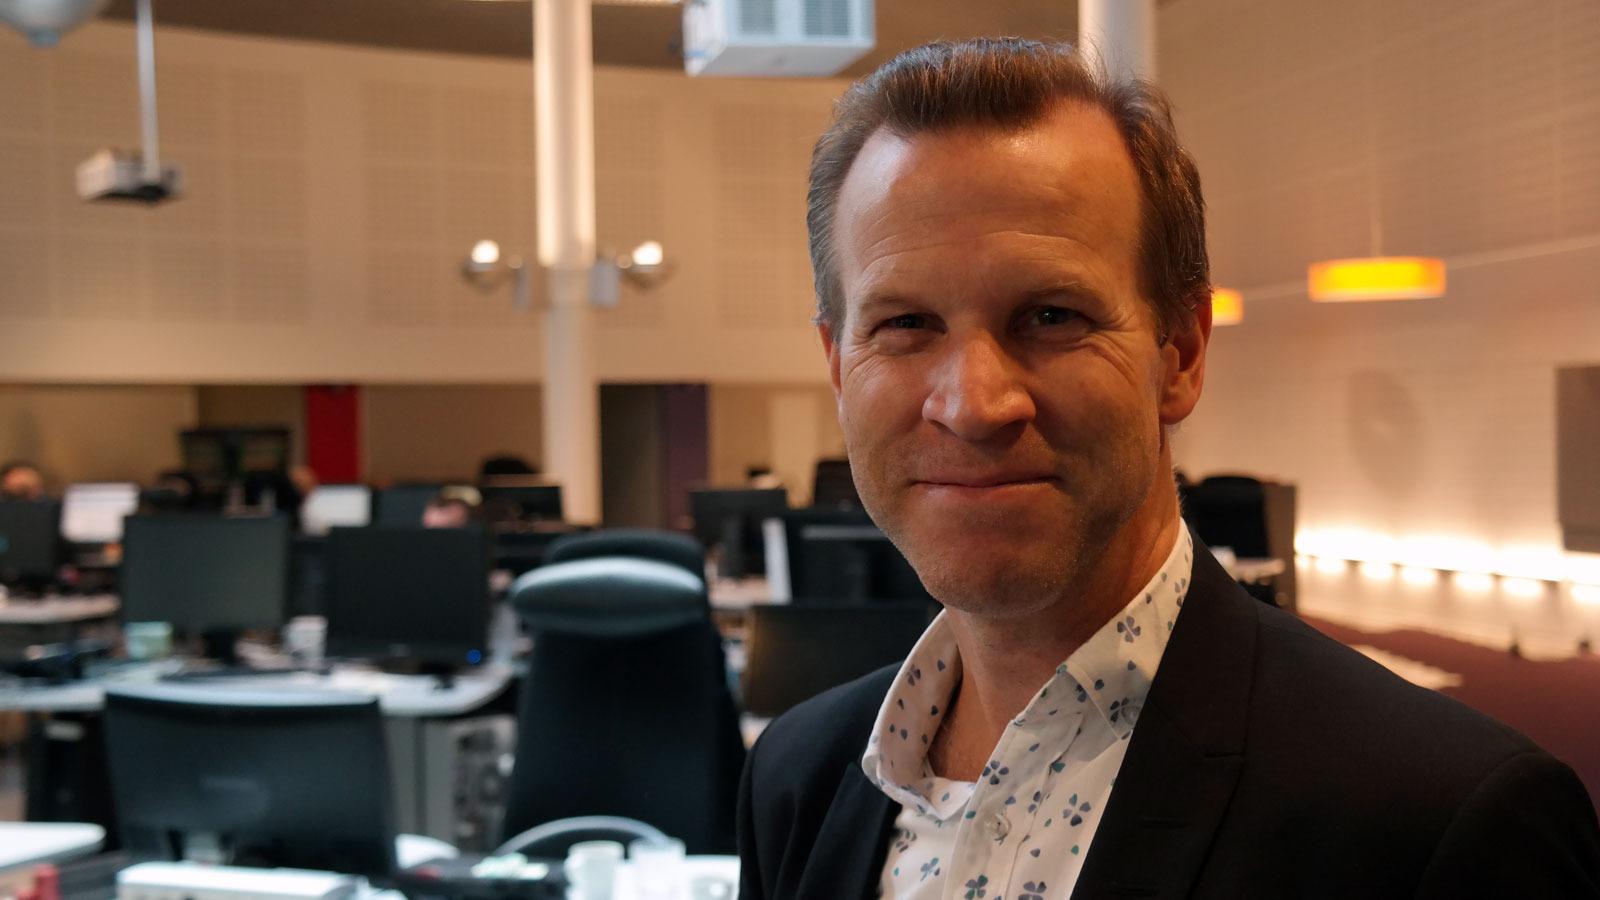 Anders Krokan er informasjonssjef i Telenor. Ved feil i nettet må han raskt sette seg inn i hva som skjer, for å kunne besvare henvendelser fra media og informere publikum og myndigheter. Foto: Espen Irwing Swang, Tek.no